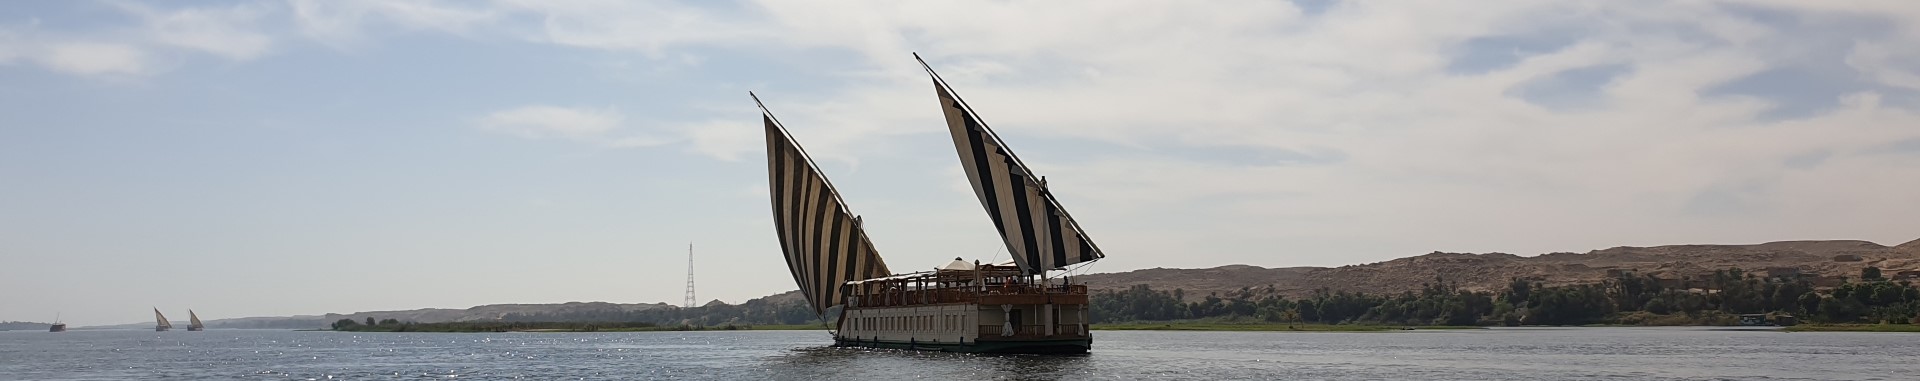 Dahabeya Queen Farida sailing